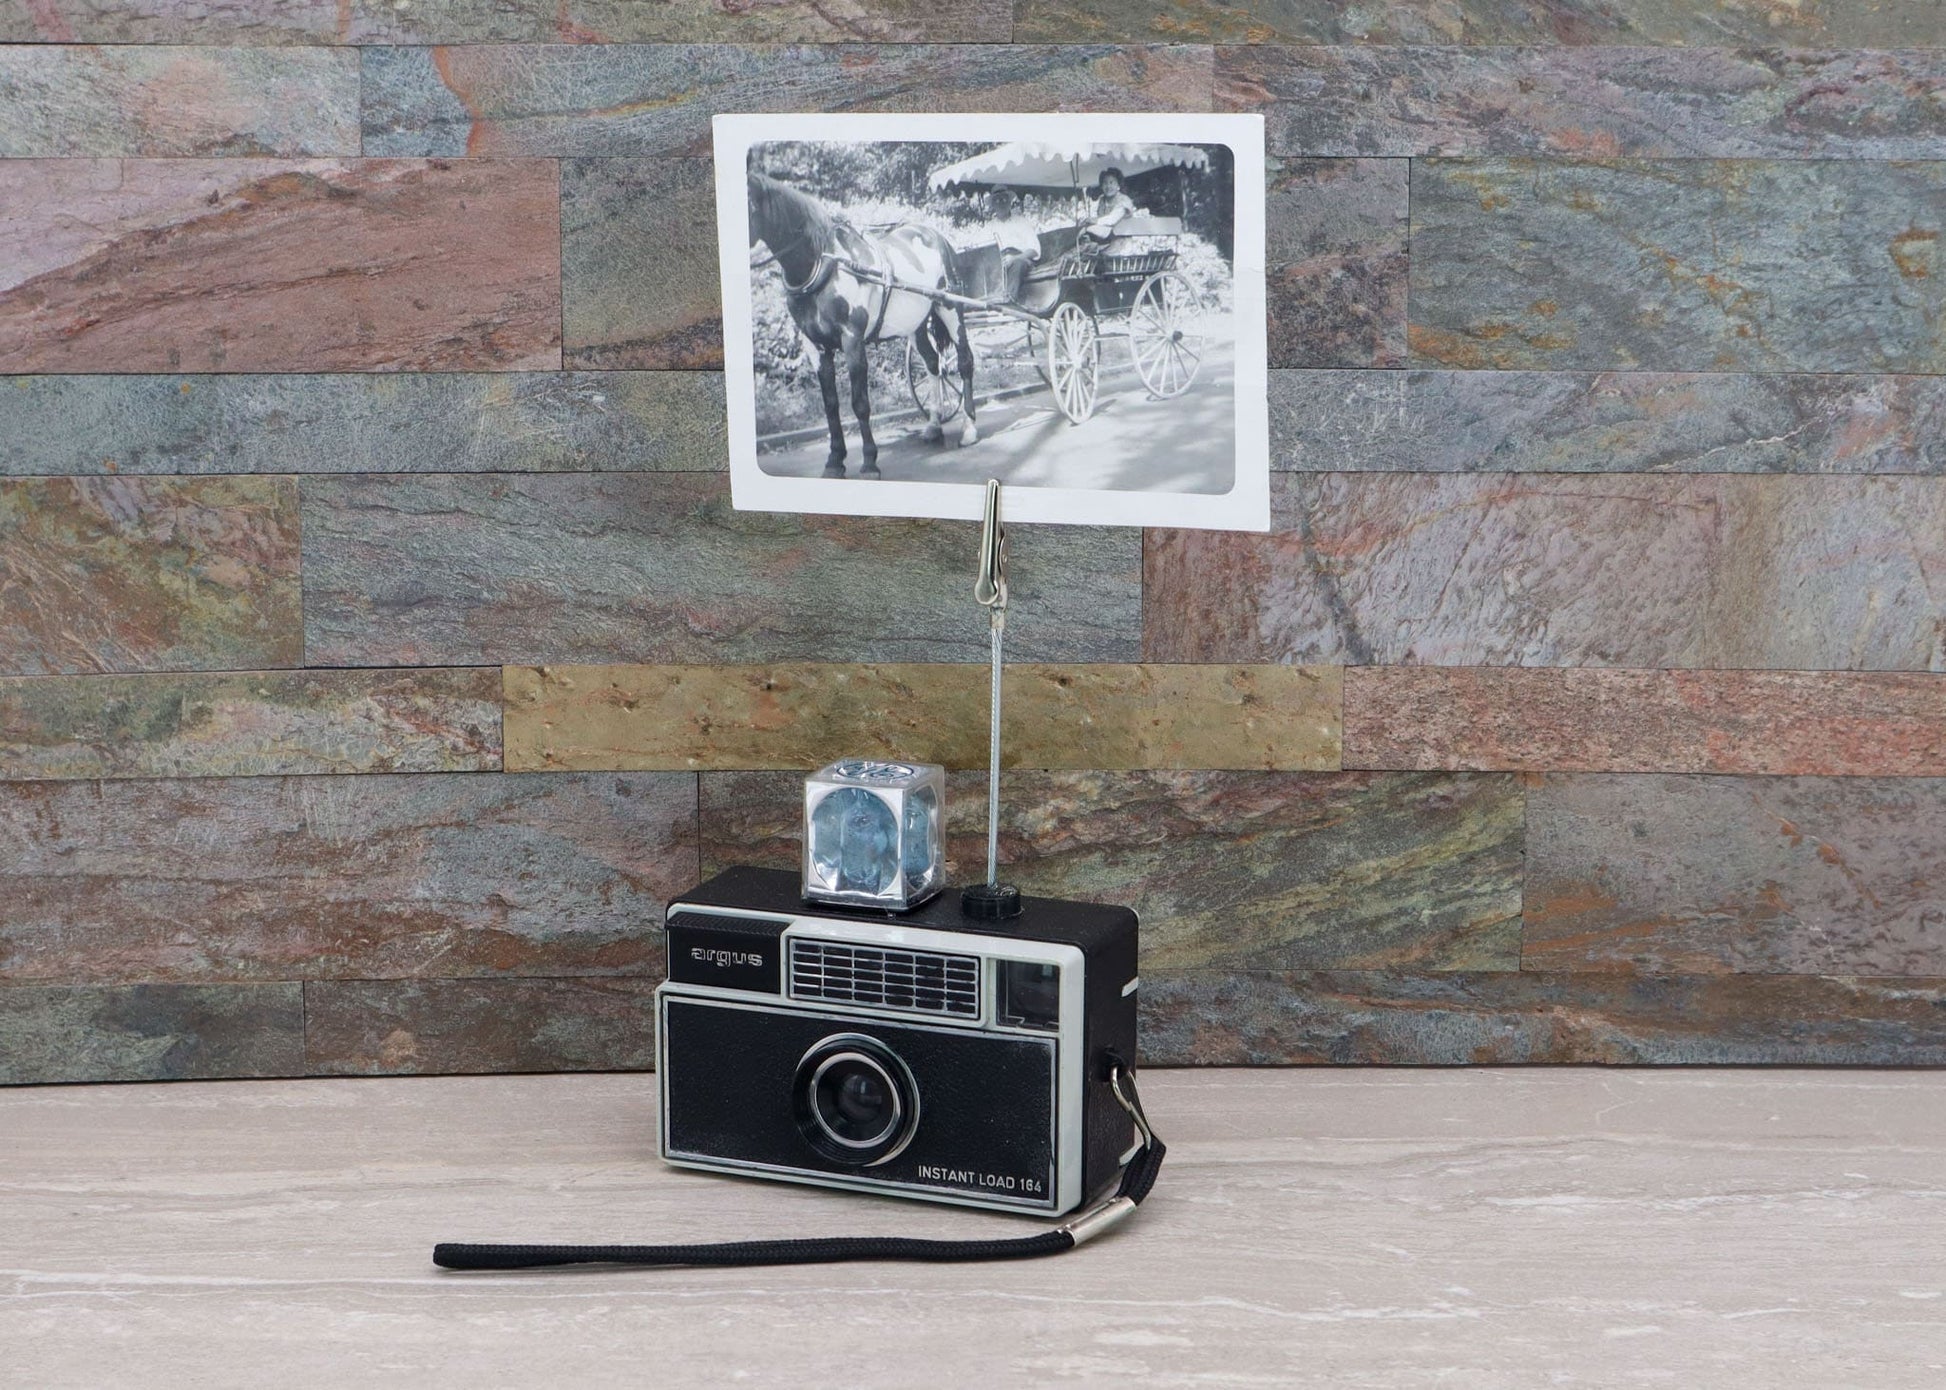 LightAndTimeArt Vintage Camera Photo Holder - Argus Instant Load 164 Camera